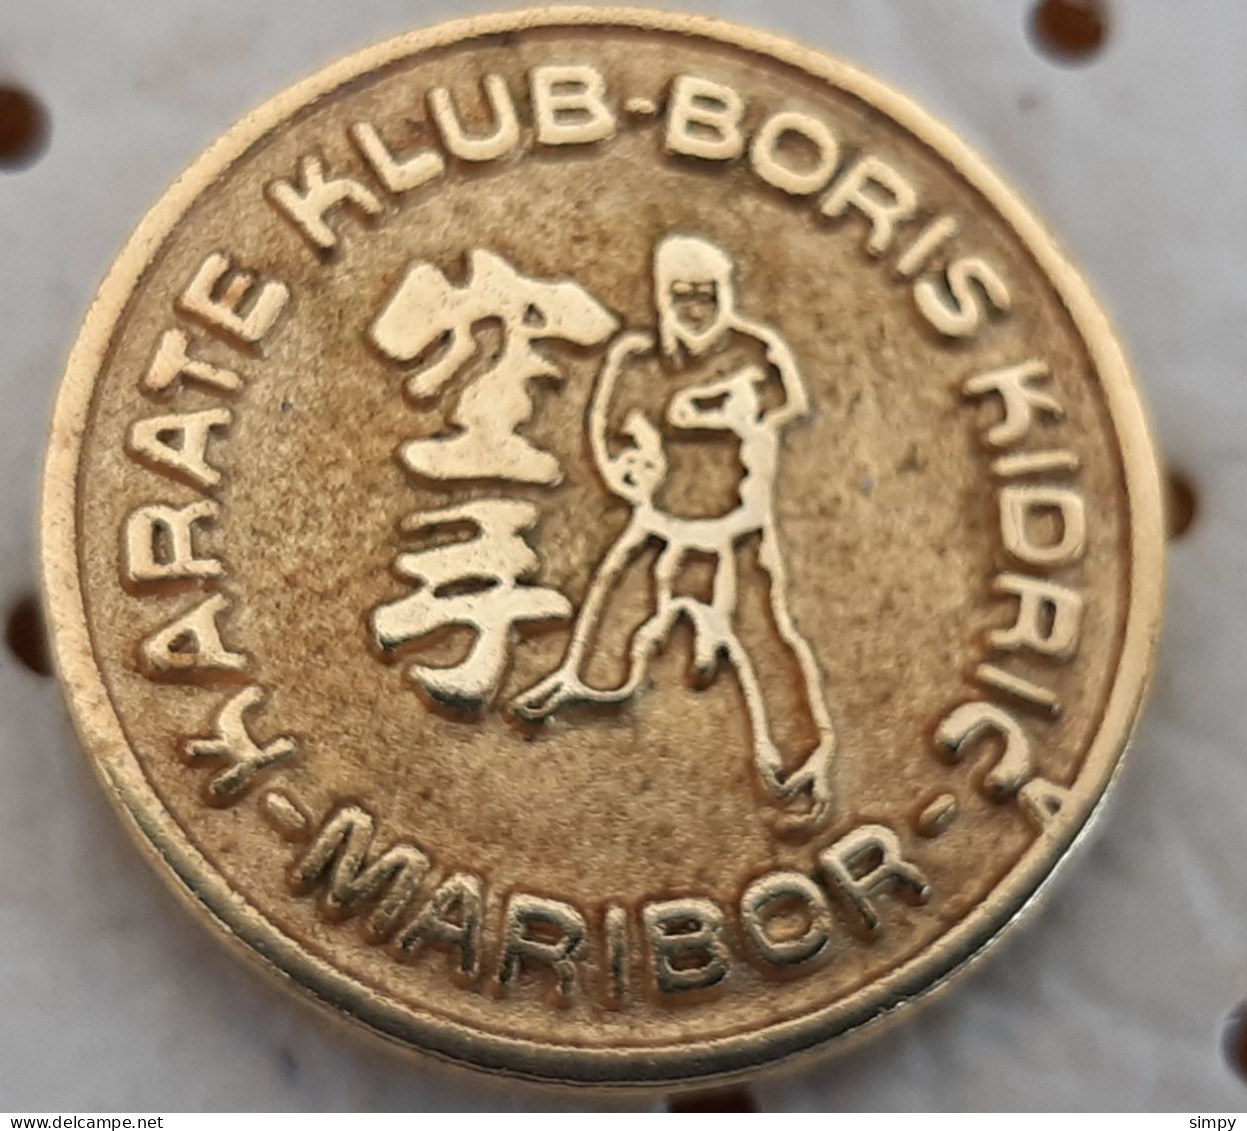 Karate Club Boris Kidric Maribor SLovenia Ex YUgoslavia Vintage Pin - Judo